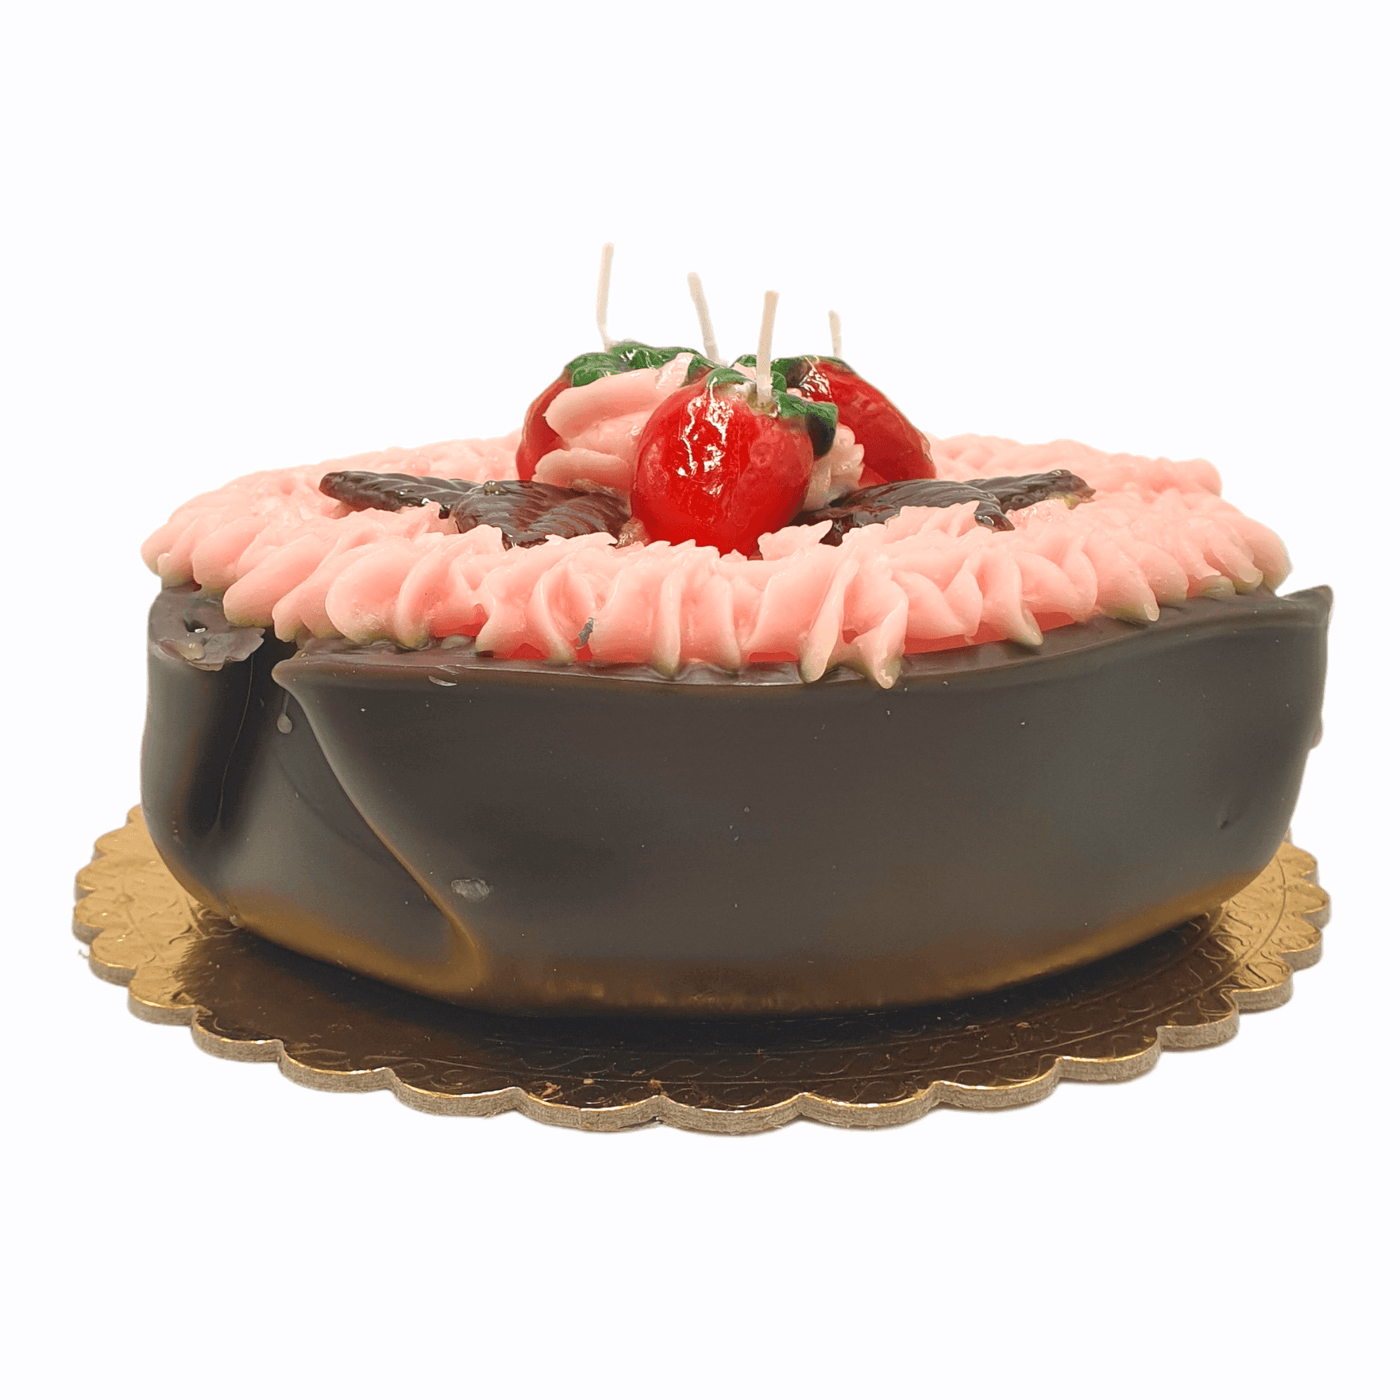 Cereria - Kerze in Form eines Schokokuchens mit Erdbeeren | Ø 24 cm - Codeso Living